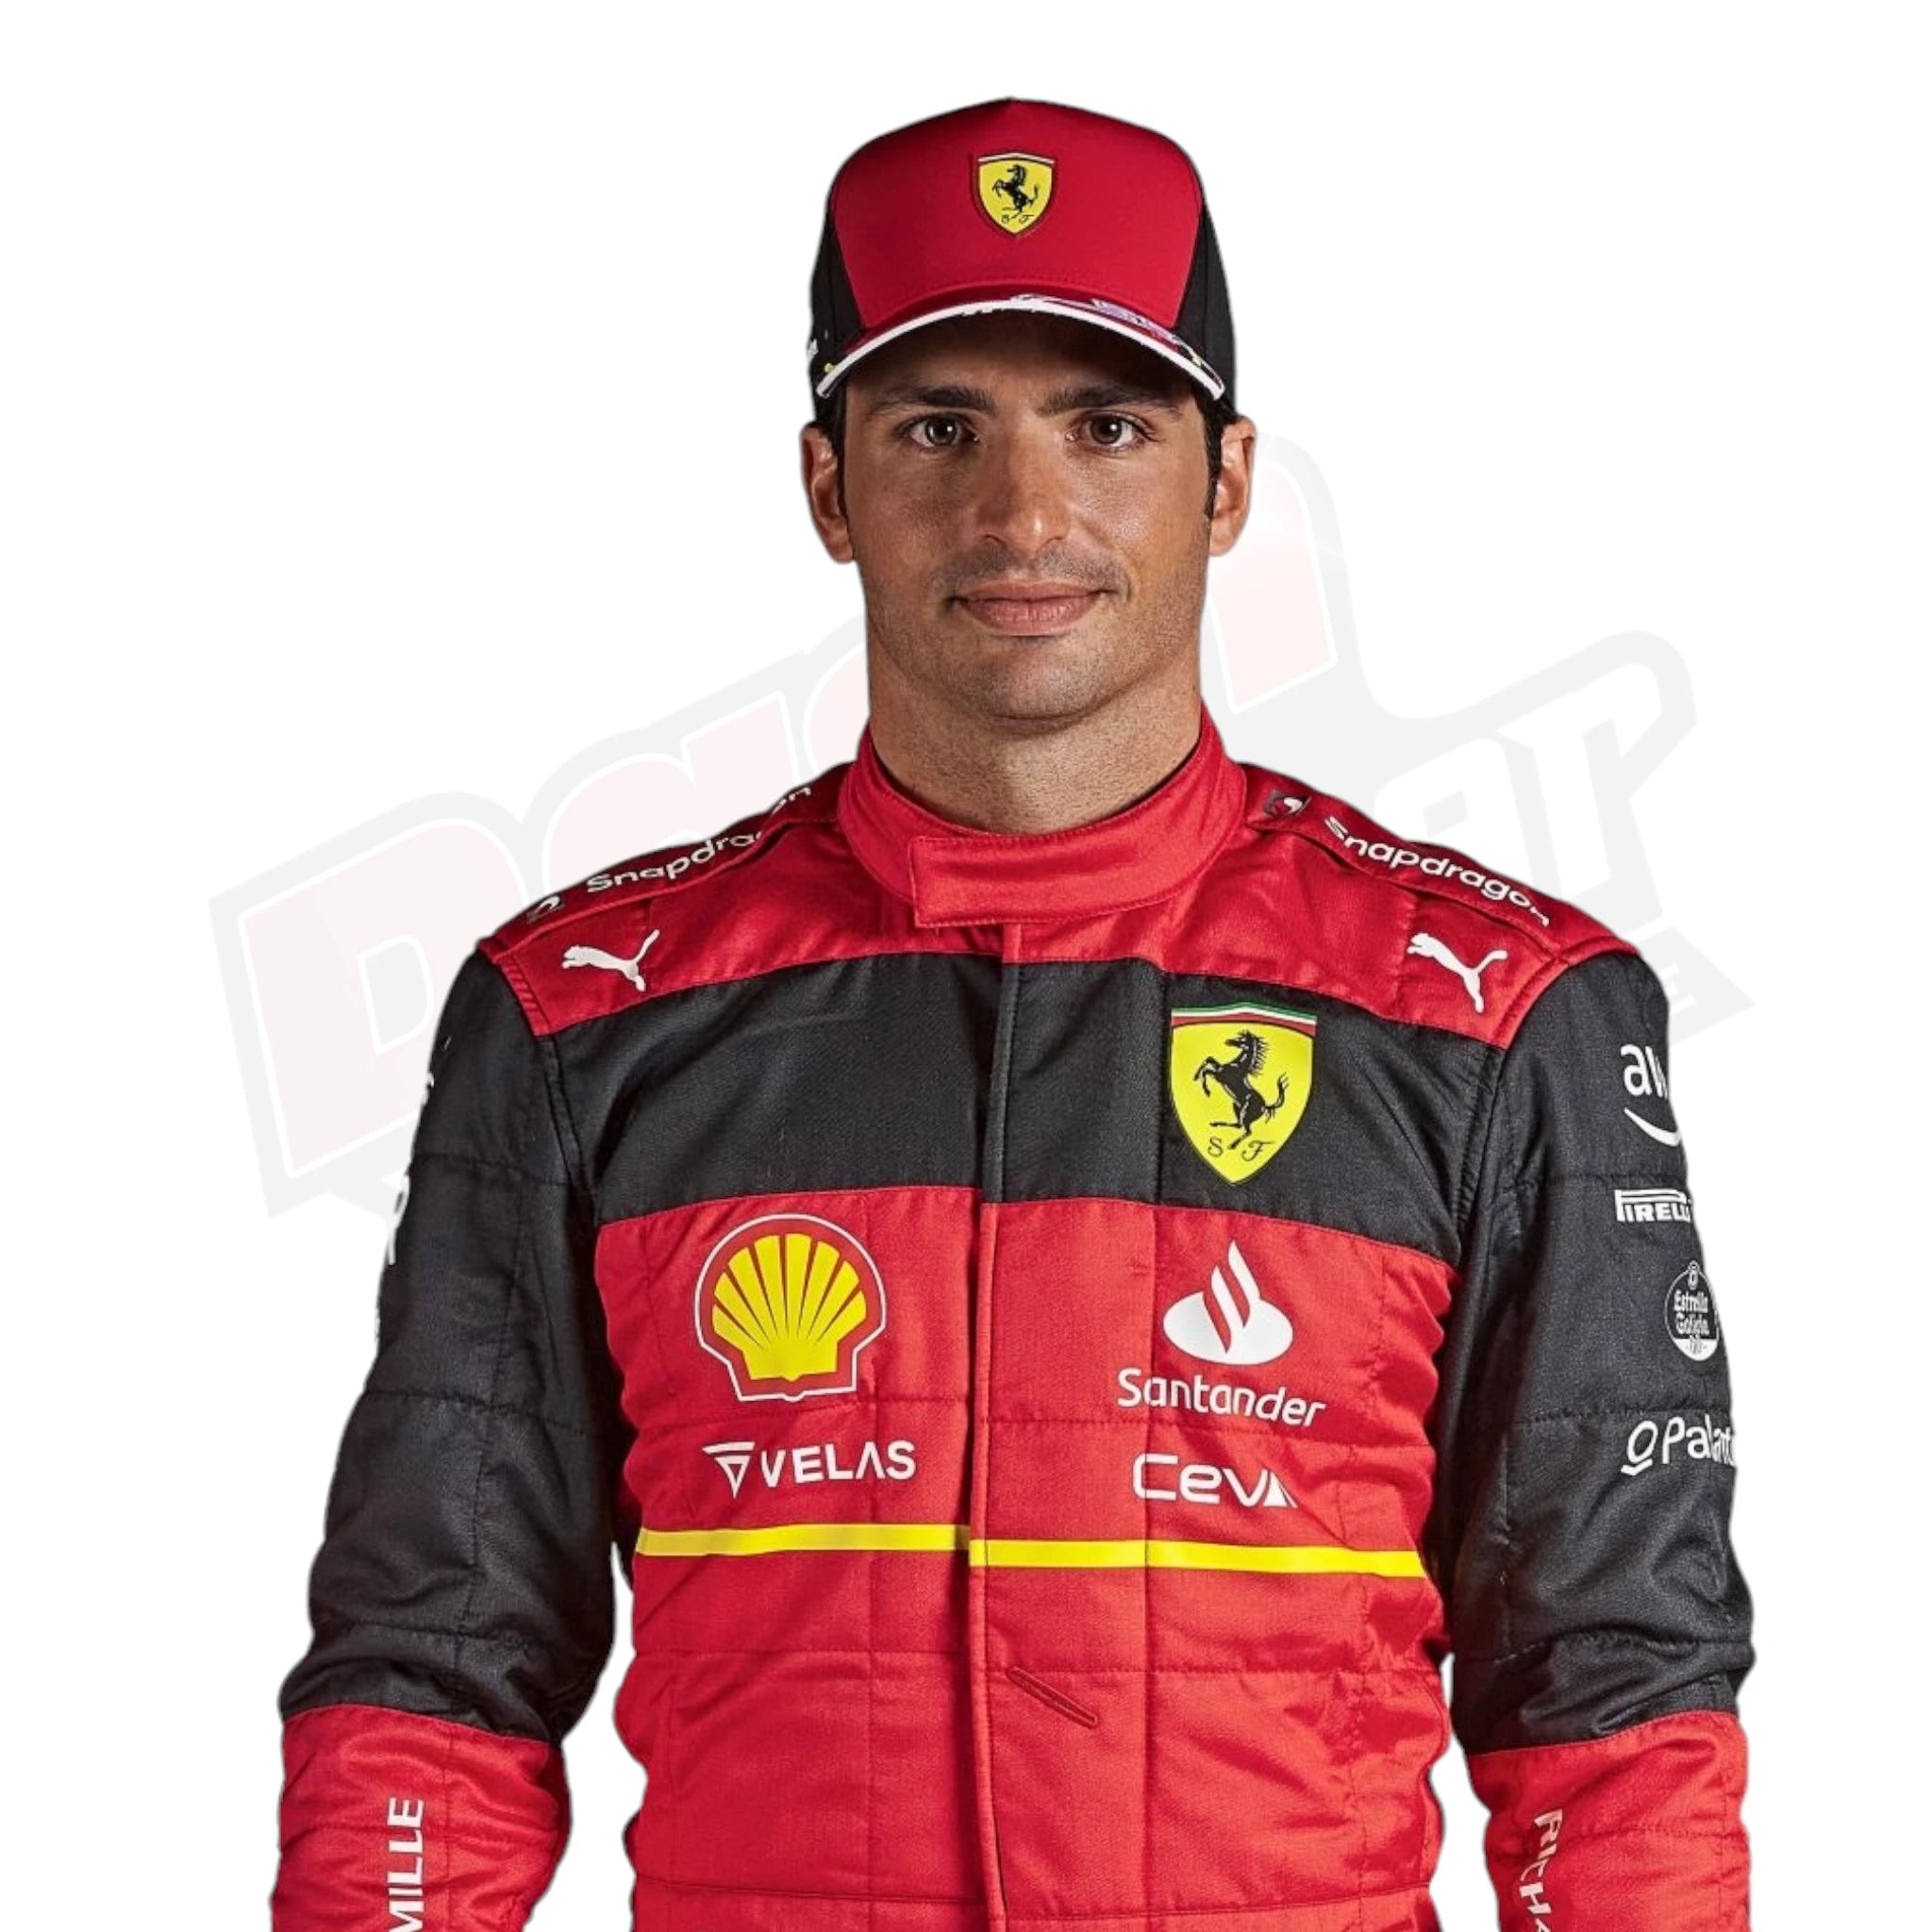 2022 Scuderia Ferrari Carlos Sainz F1 Race Suit